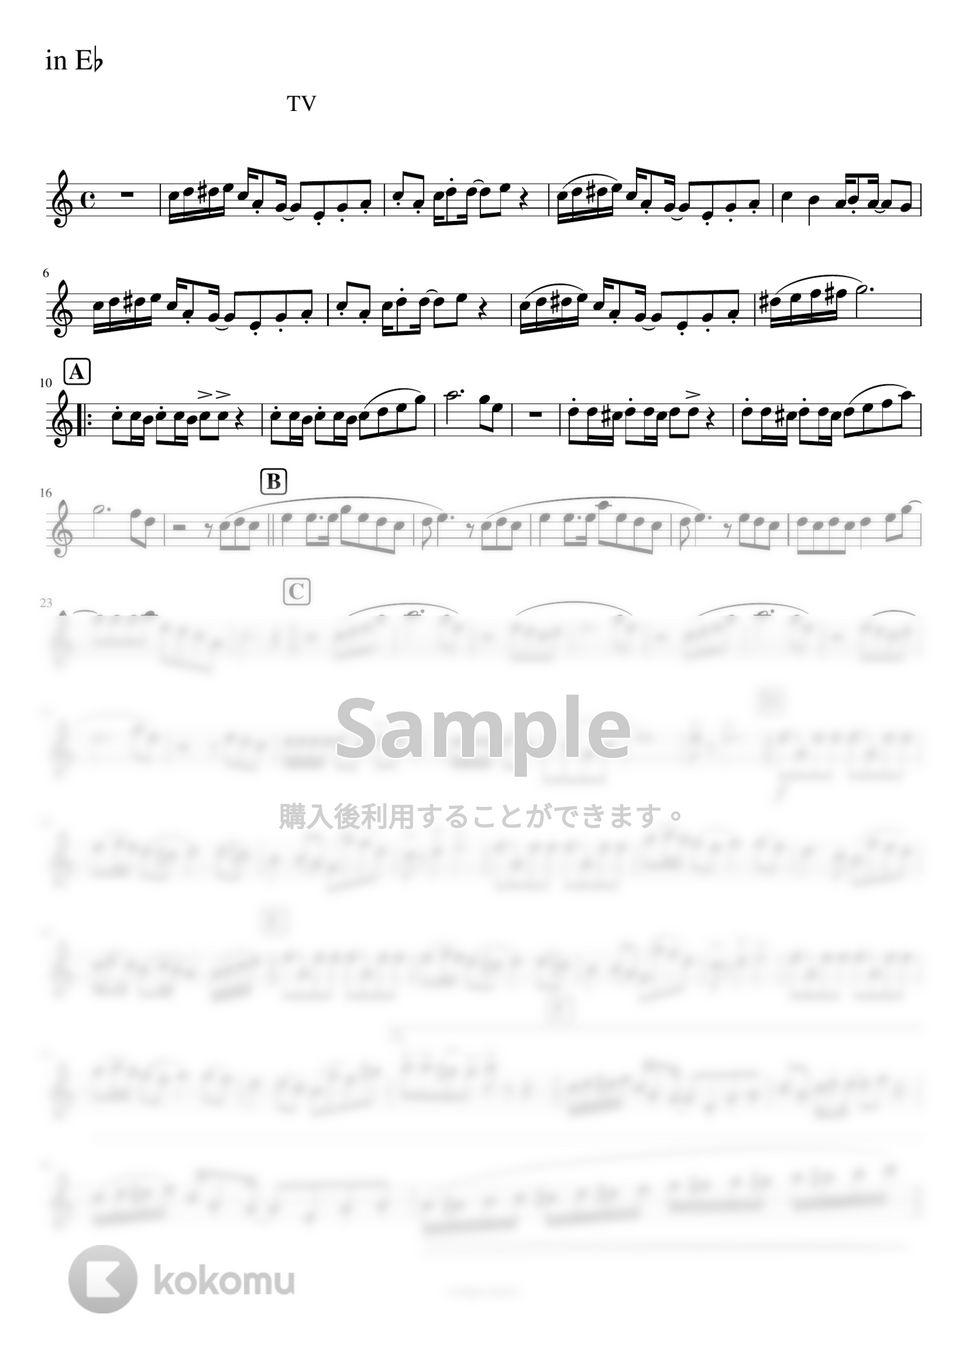 おジャ魔女どれみ - おジャ魔女カーニバル!! (ソロ / E♭管 / Esクラ / アルトサックス / バリサク) by orinpia music